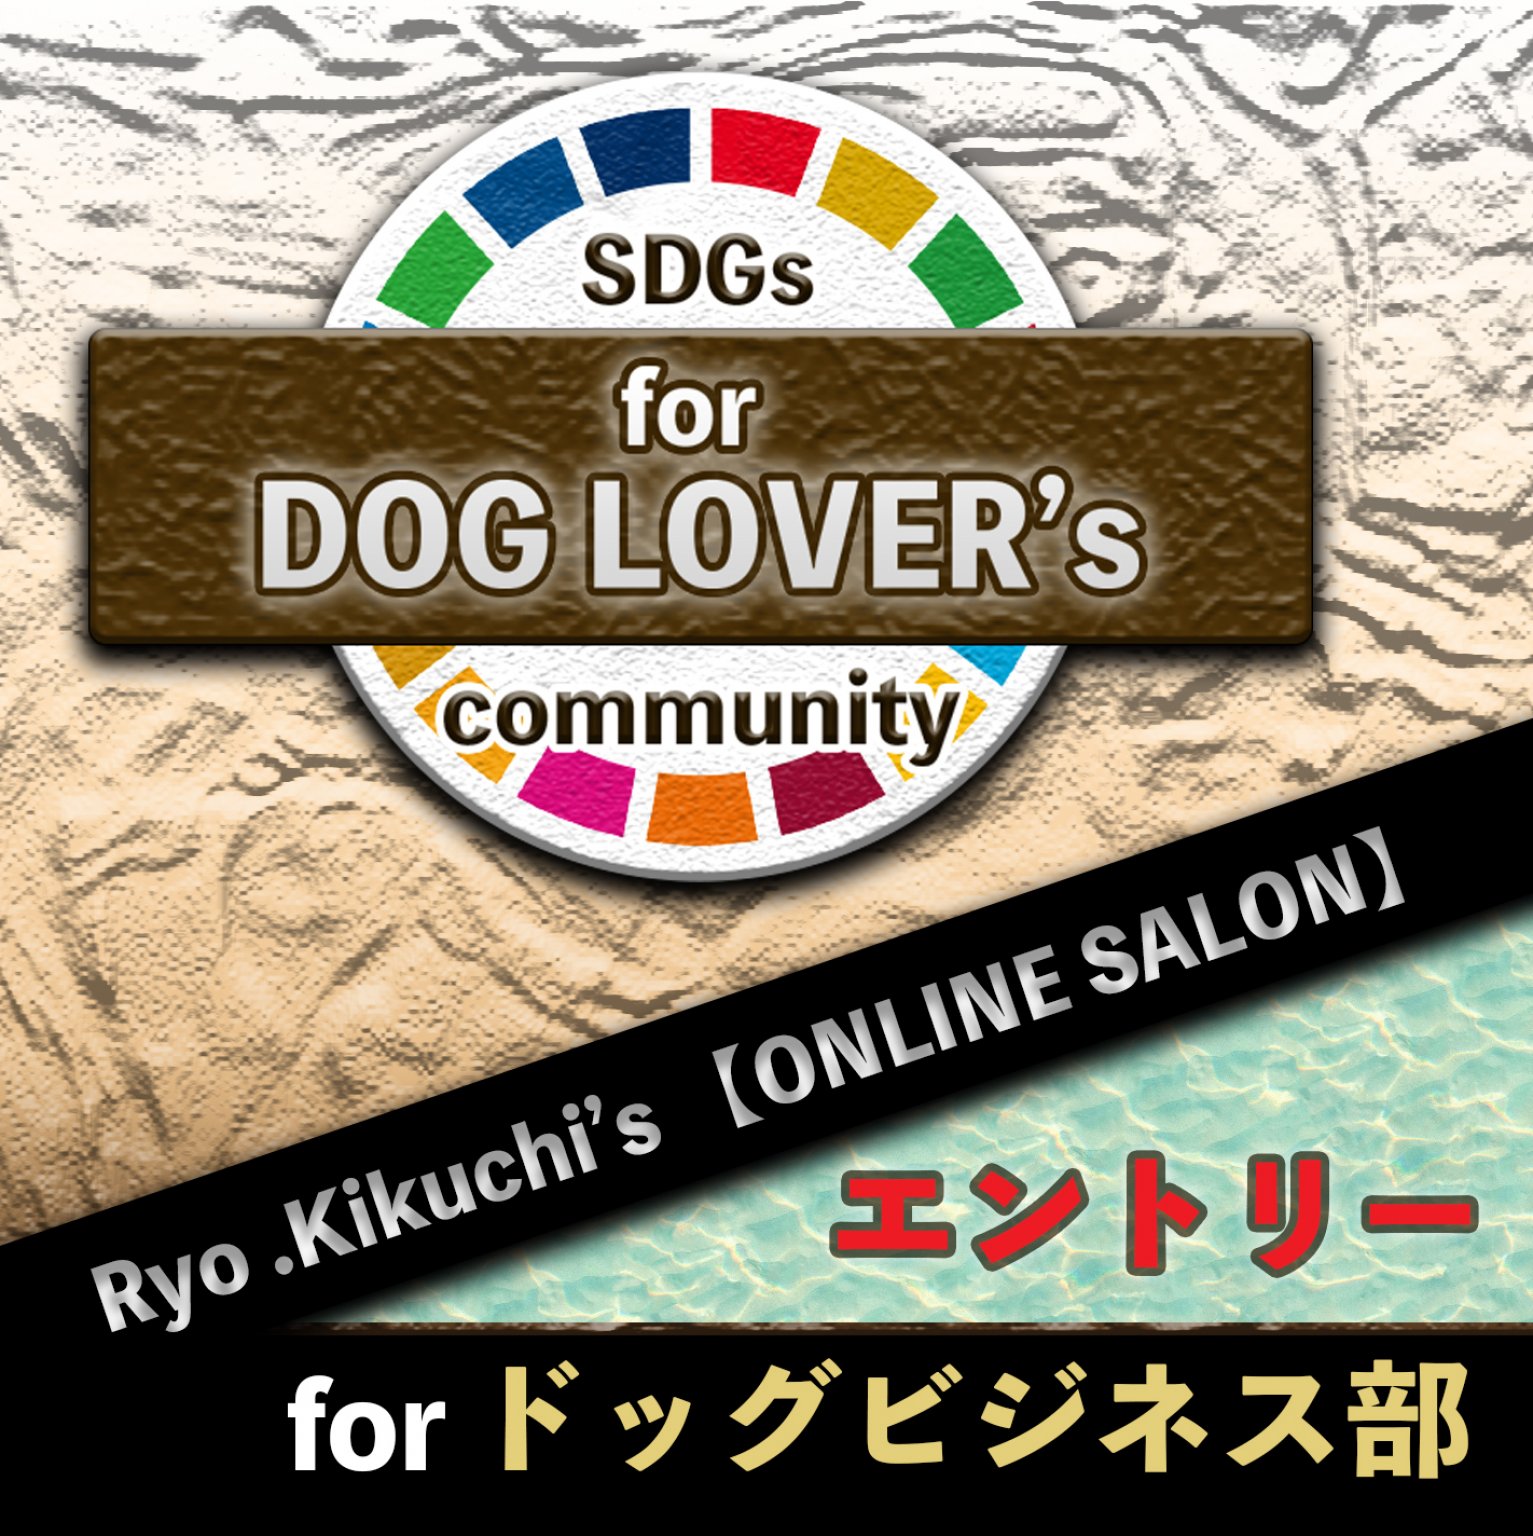 【エントリー】for ドッグビジネス部 《菊池 亮のオンライン サロン SDGs的 DOG LOVER's community》